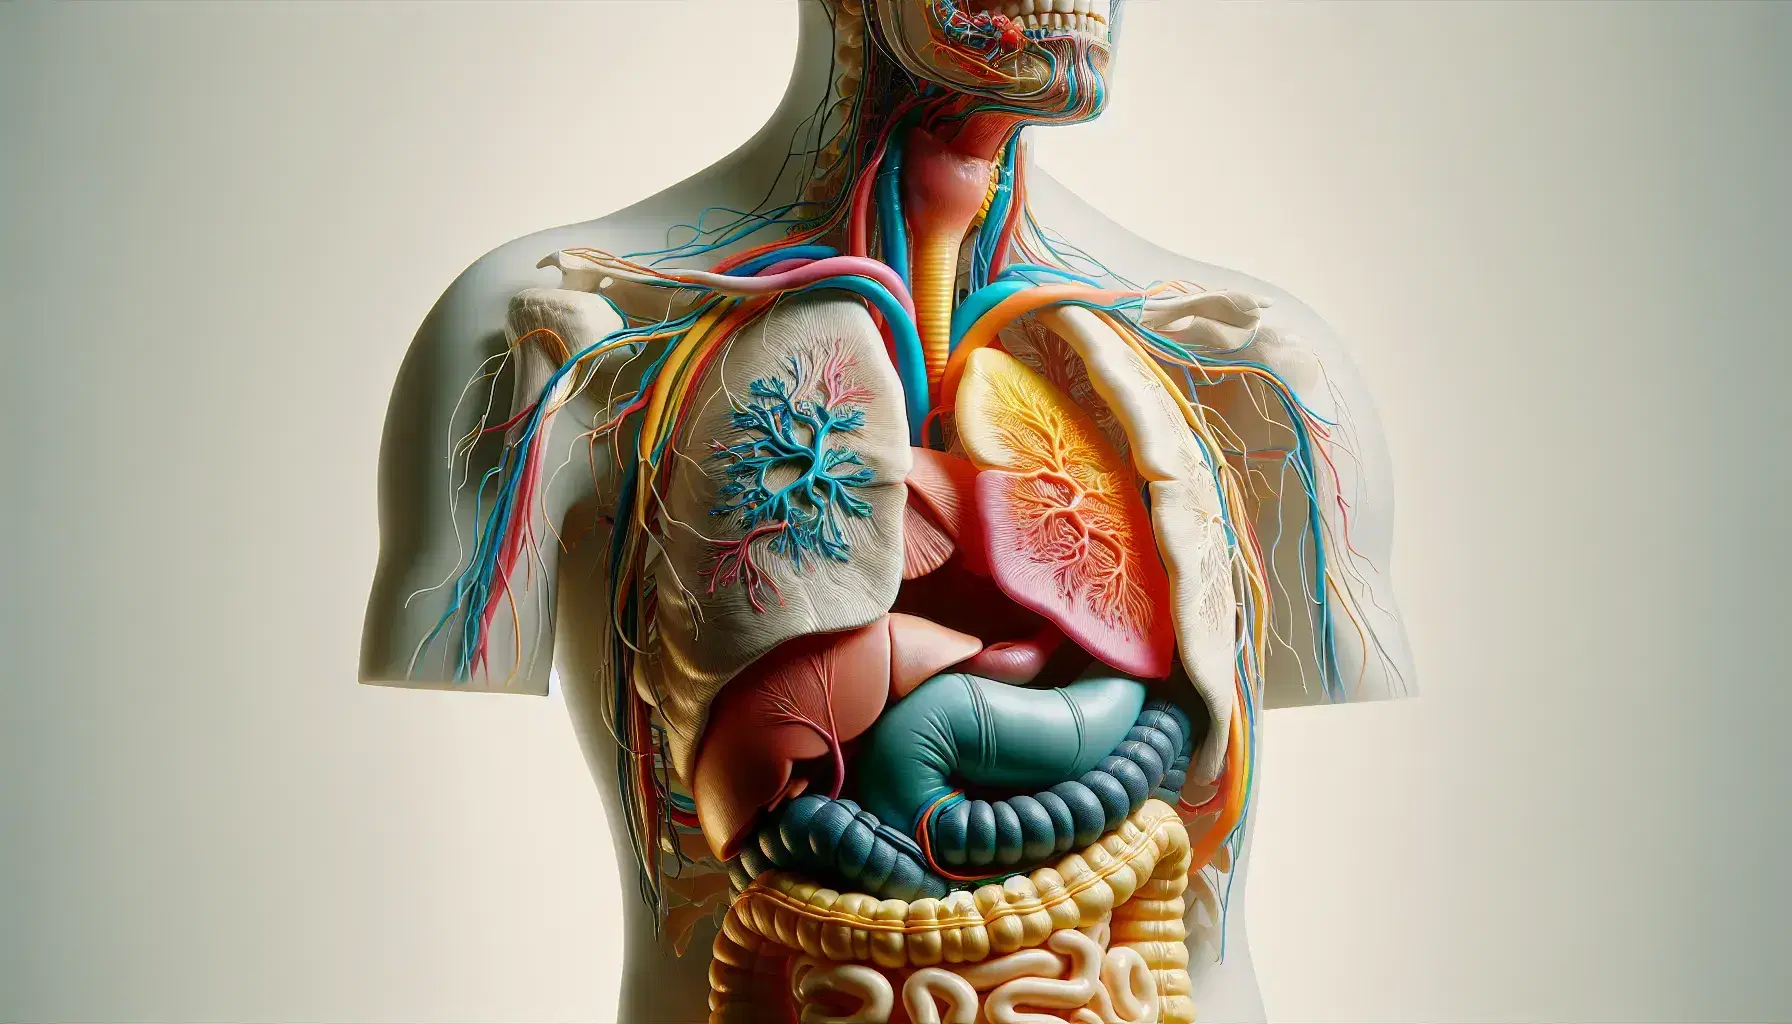 Modelo anatómico tridimensional del sistema digestivo humano, mostrando órganos desde la boca hasta el intestino grueso en colores diferenciados y fondo neutro.